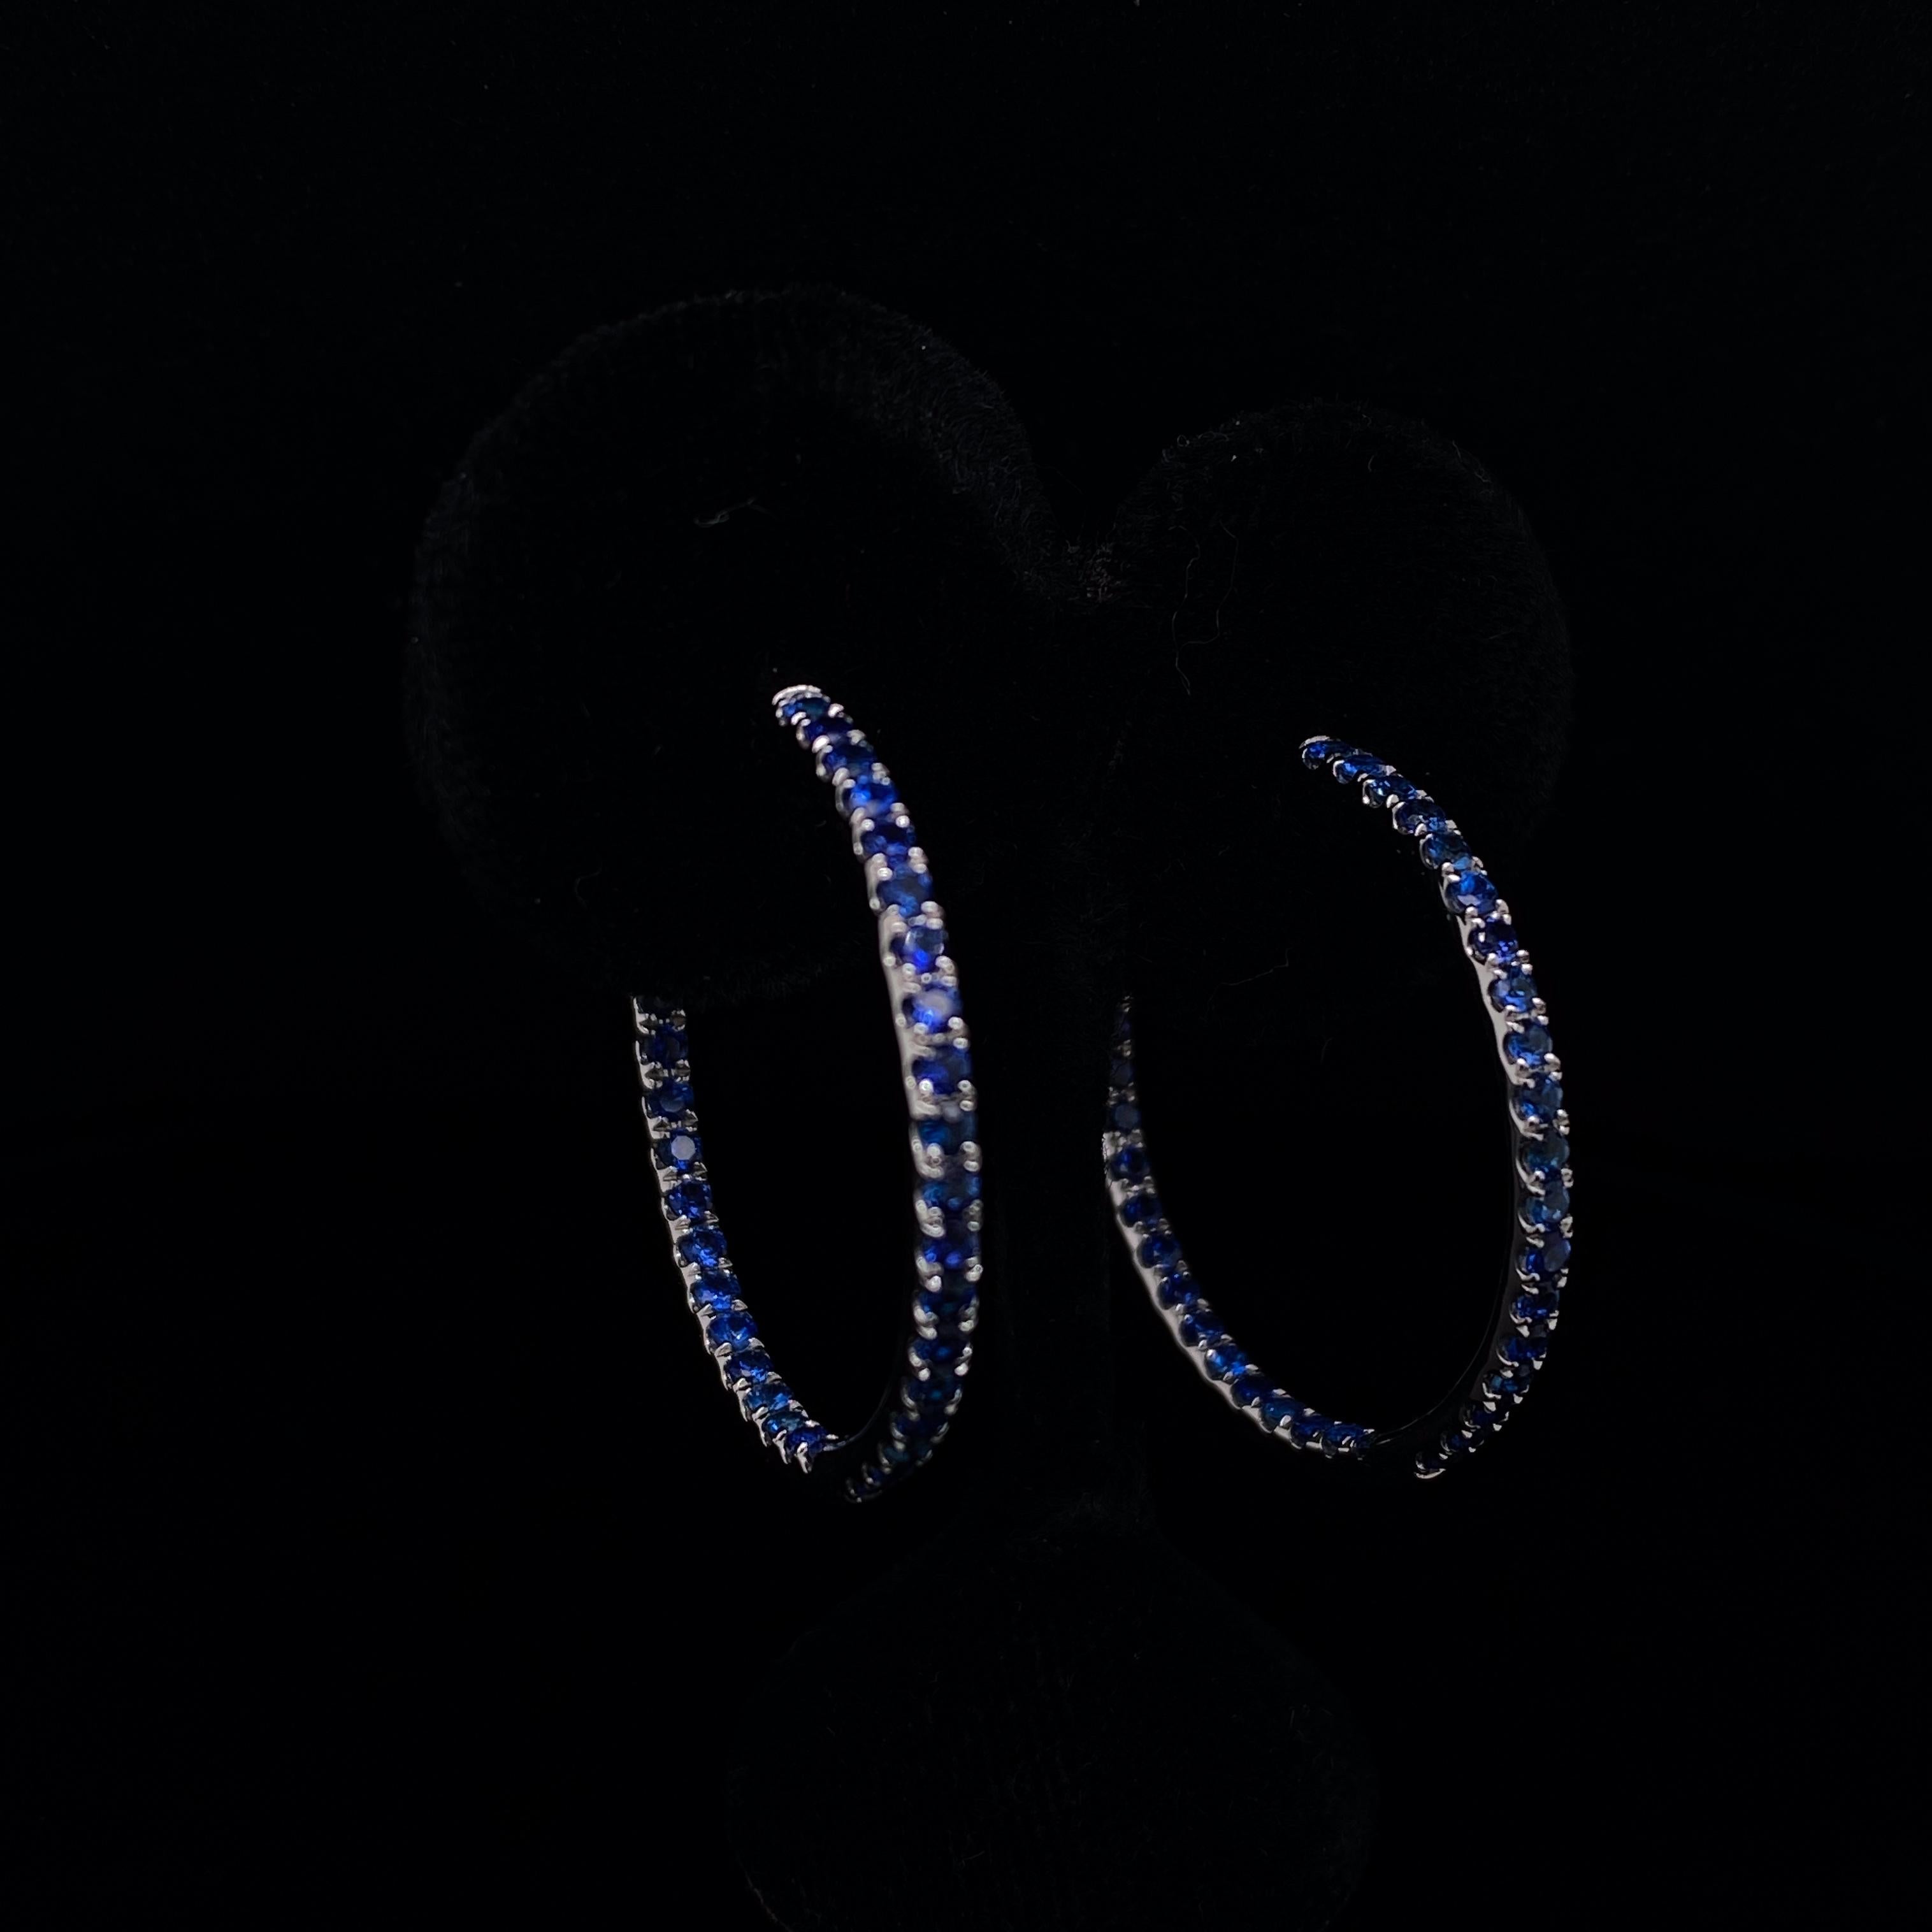 Ein Paar Saphir-Ohrringe aus 18 Karat Weißgold.

Die tiefblauen, rund geschliffenen Saphire sind entlang der äußeren Rundung gefasst und in den inneren, umgekehrten Ring jedes Ohrrings eingearbeitet, so dass die Trägerin aus jedem Blickwinkel ein